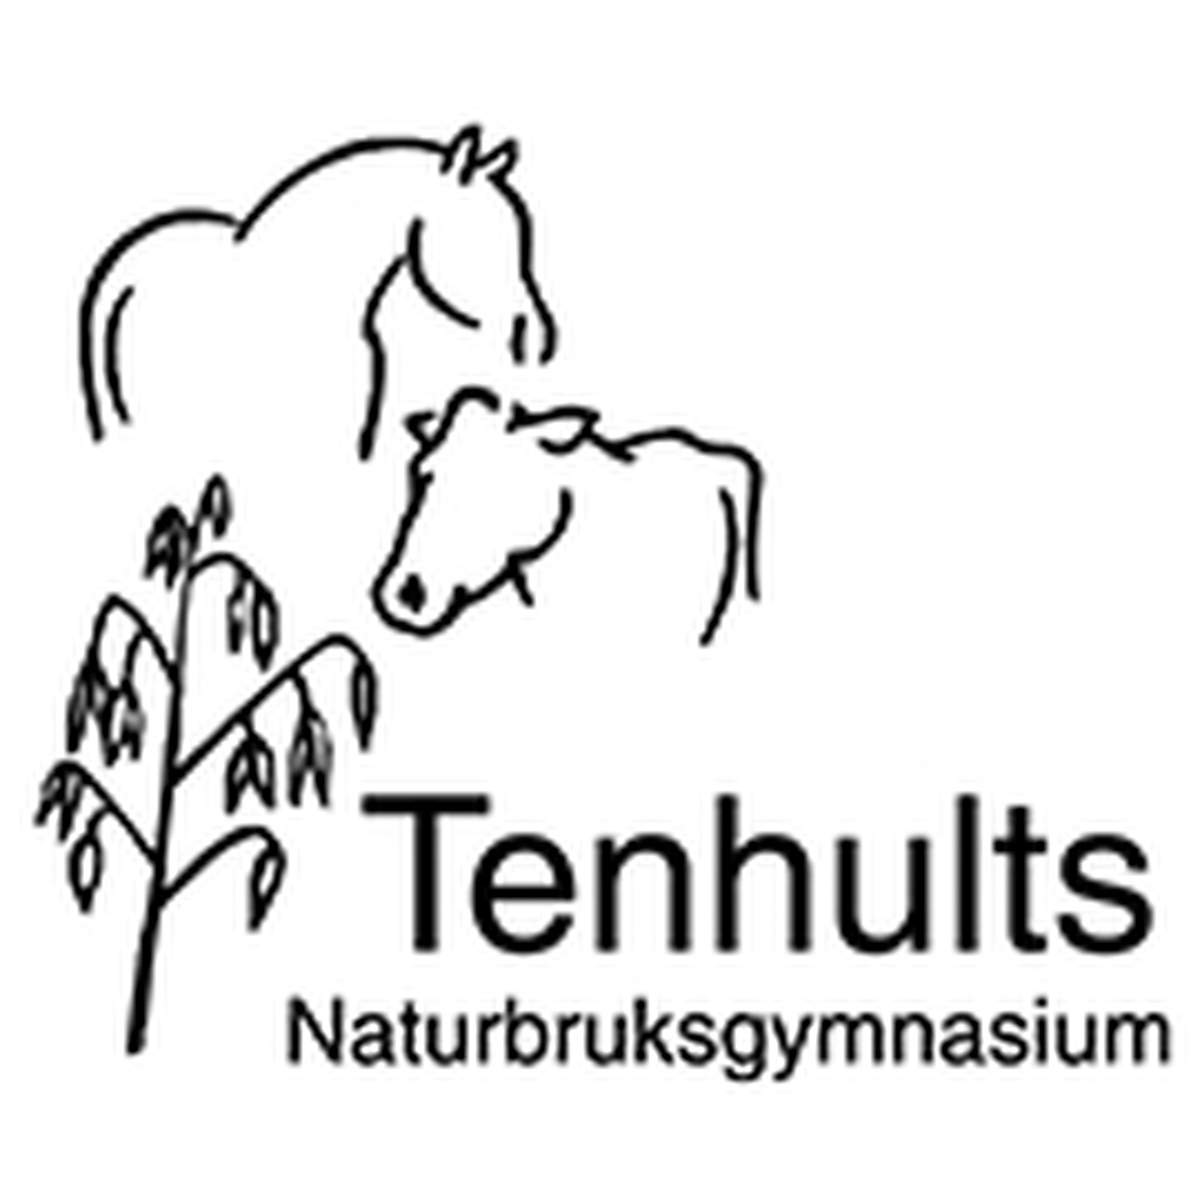 Tenhults Naturbruksgymnasium